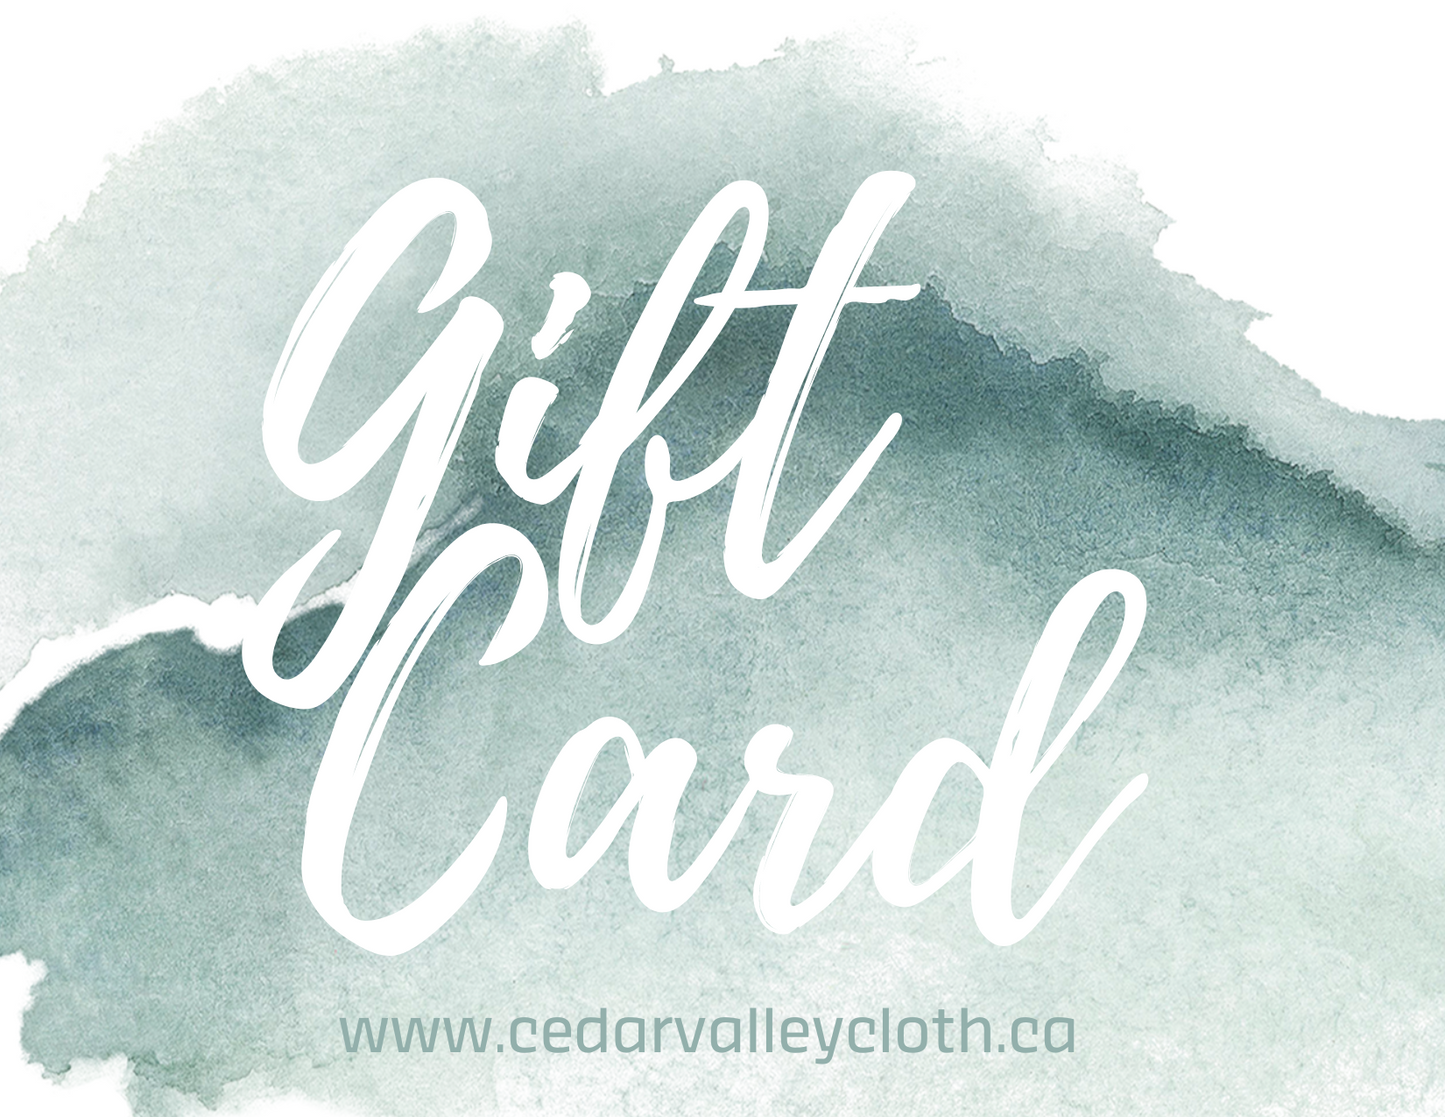 Cedar Valley Cloth Co. Gift Card